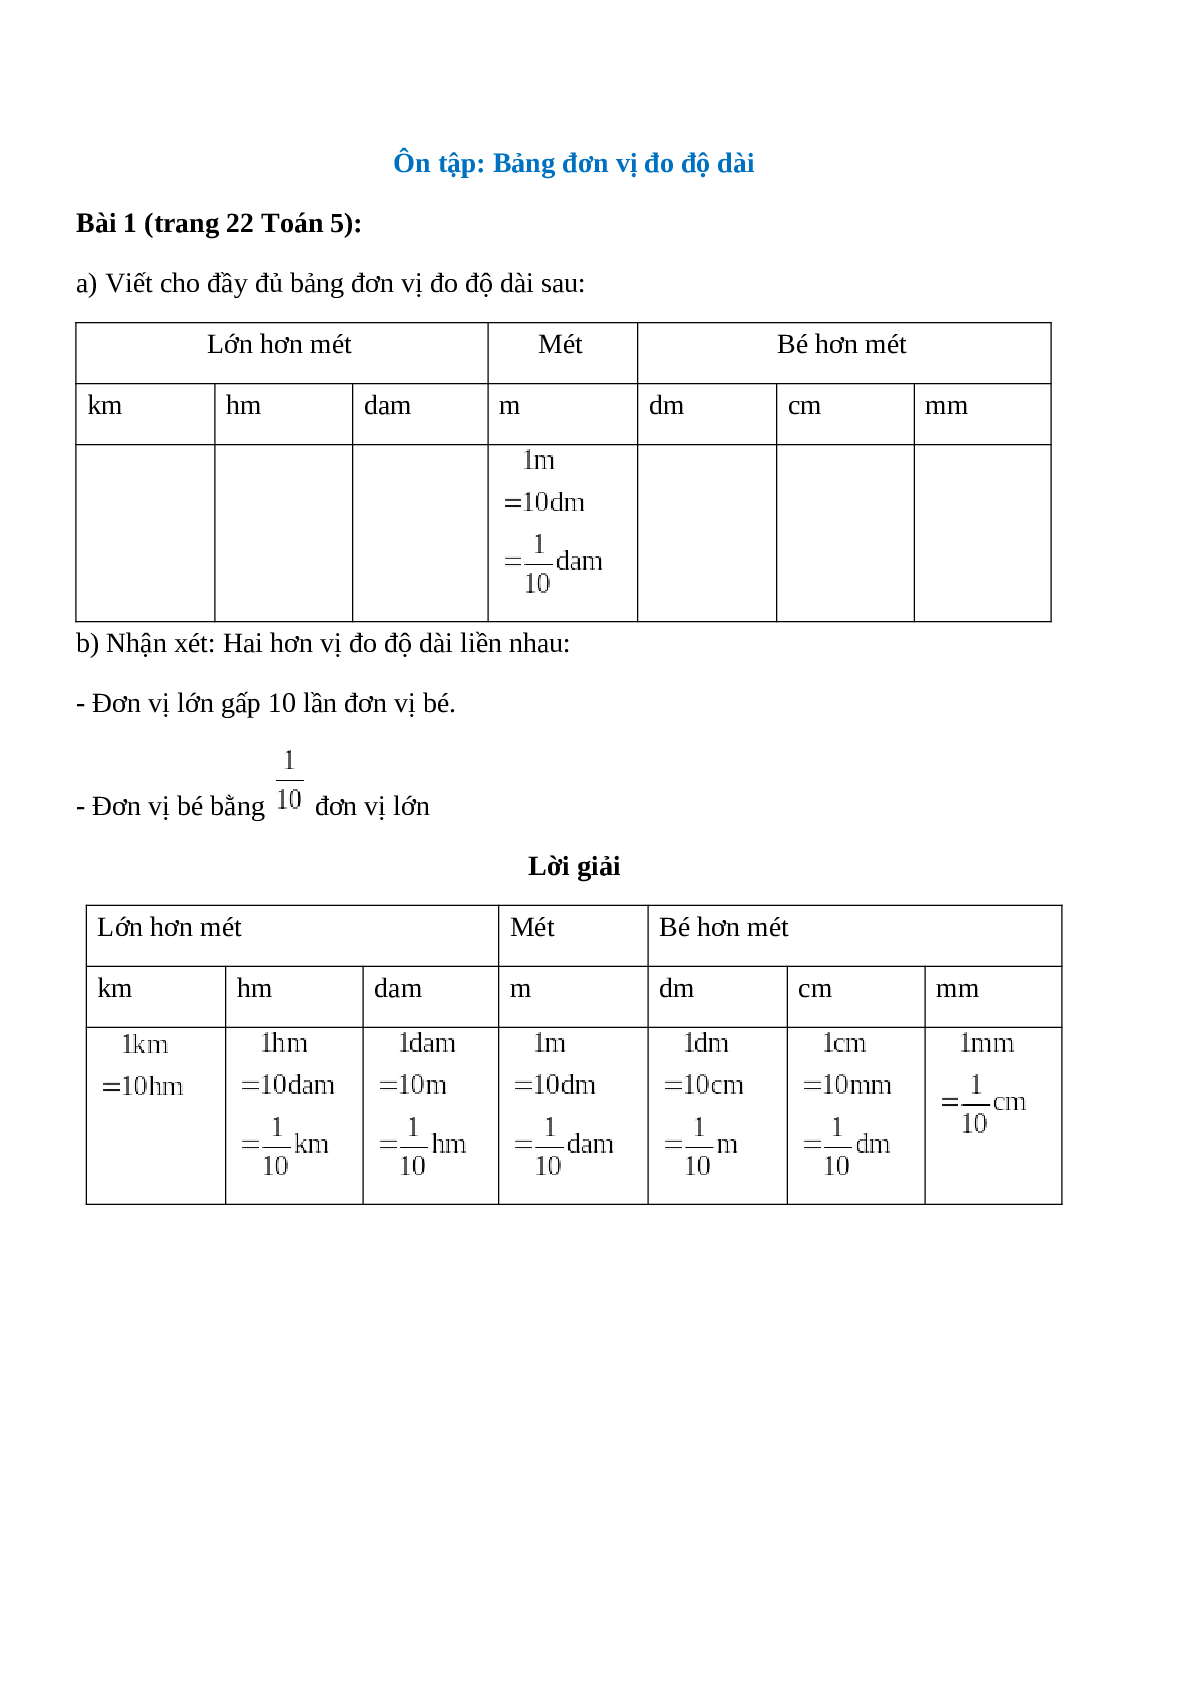 Viết cho đầy đủ bảng đơn vị đo độ dài sau Bài 1 trang 22 Toán 5 (trang 1)